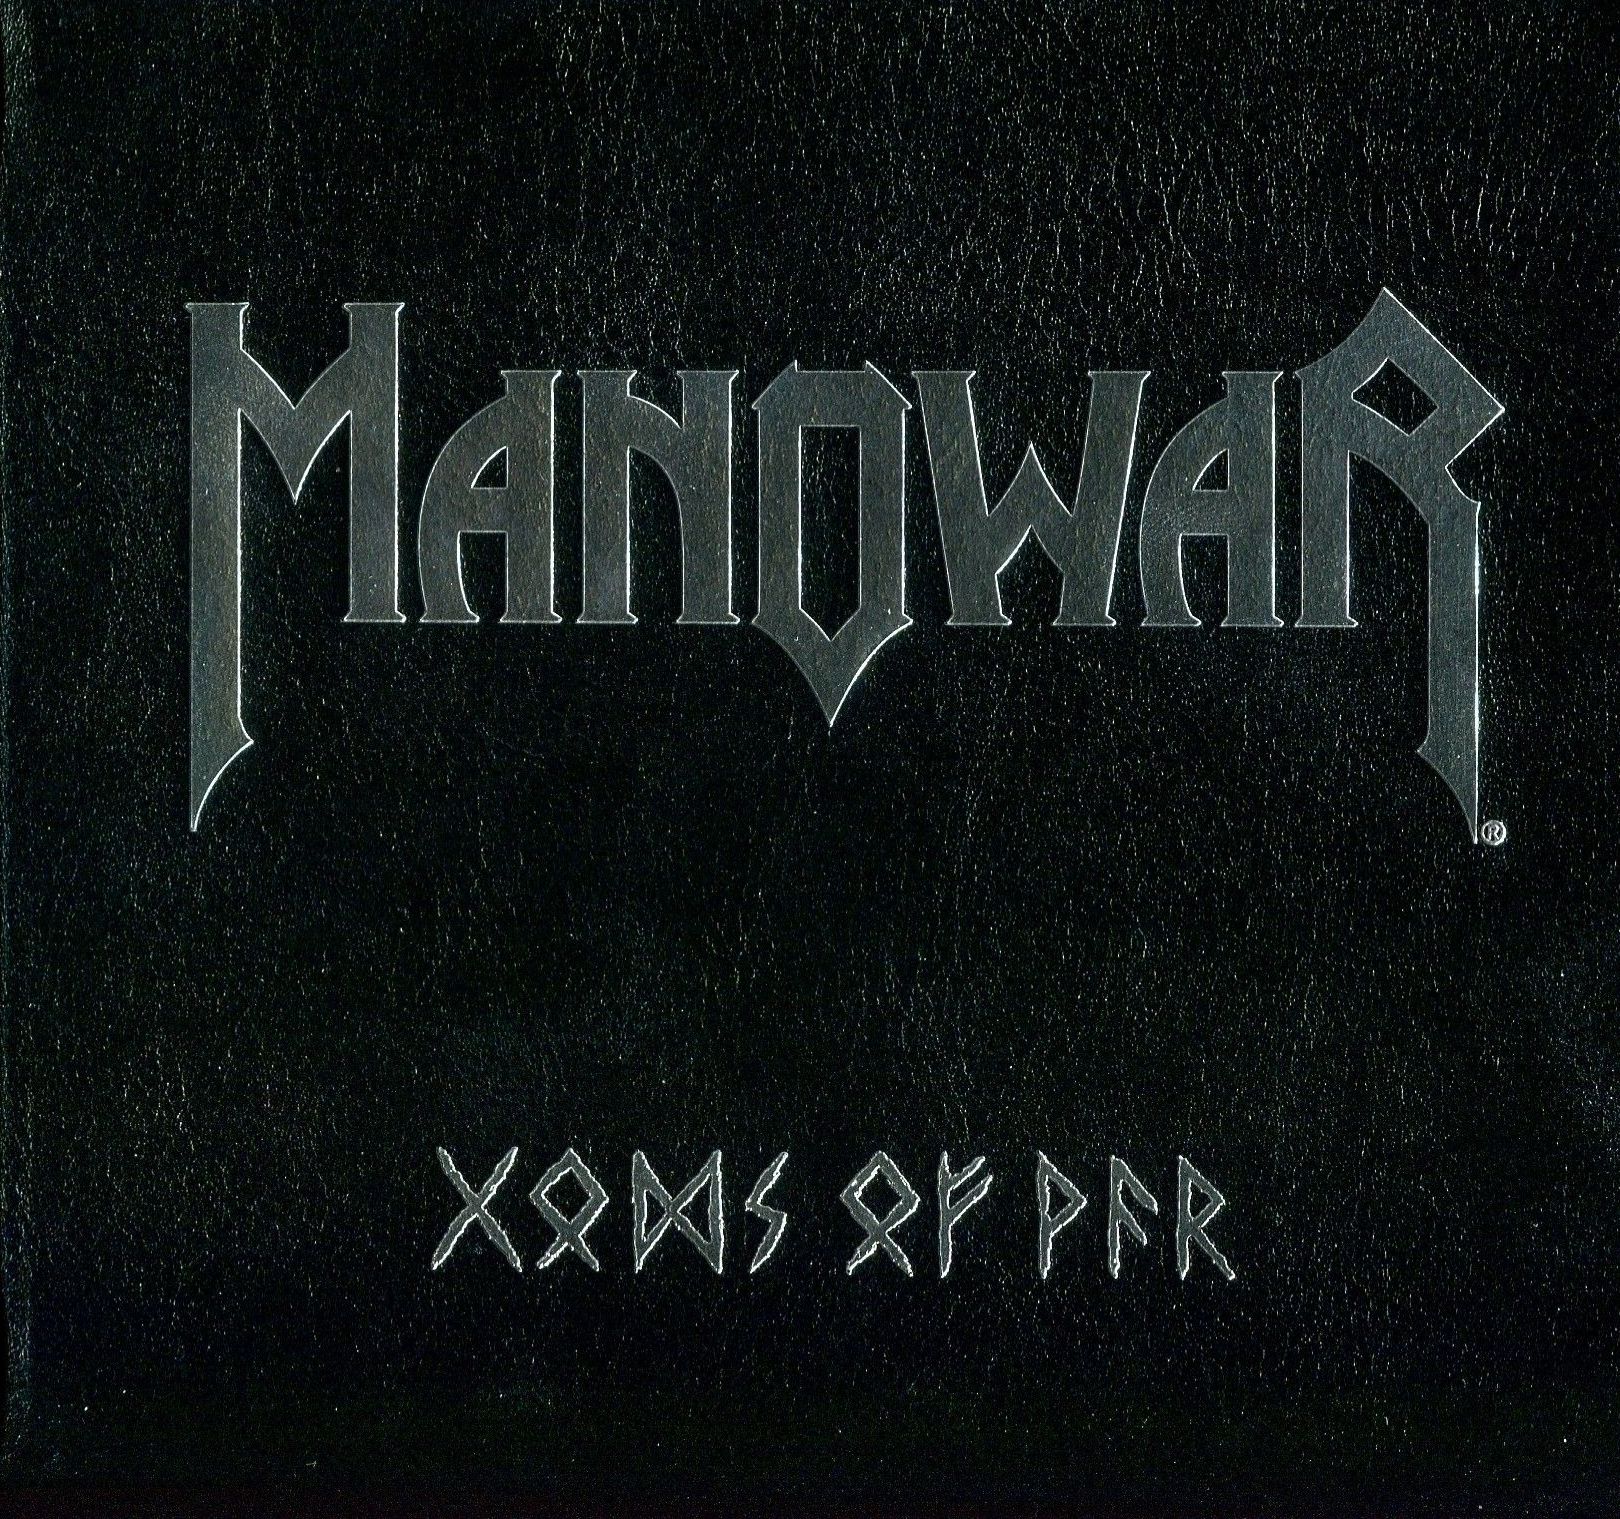 Manowar mp3. Manowar альбомы. Manowar обложки. Manowar логотип группы. Manowar Kings of Metal обложка.